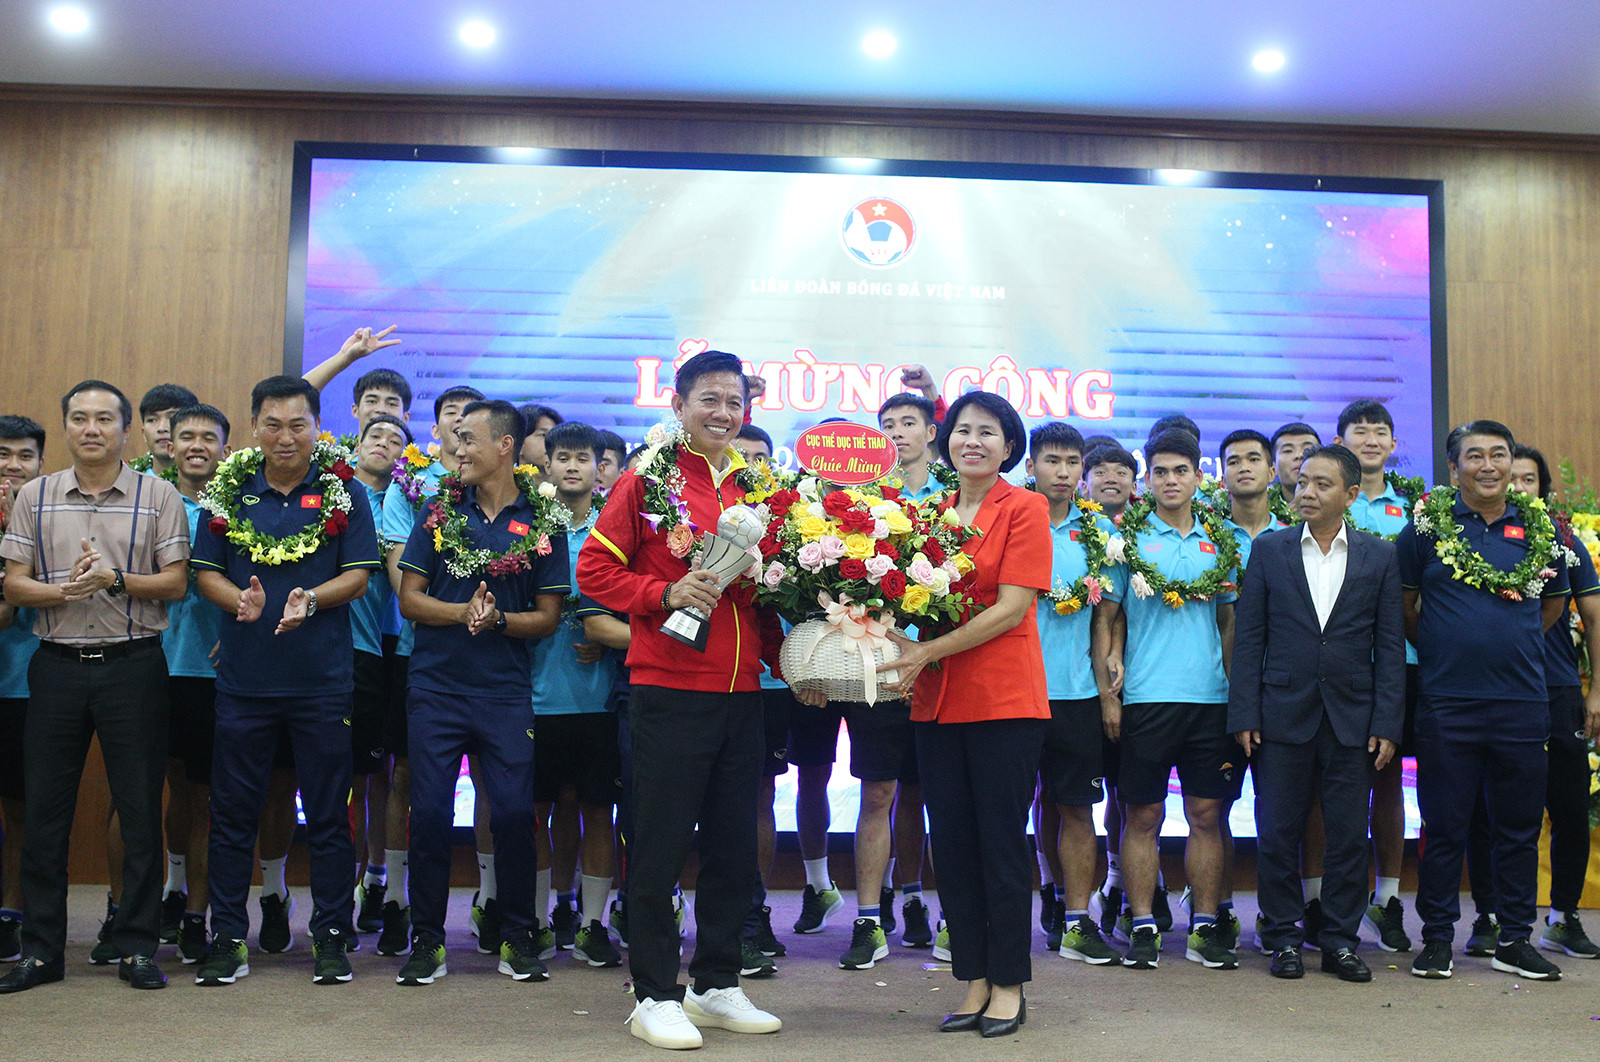 HLV Hoàng Anh Tuấn từng dẫn dắt U23 Việt Nam trước đây và giành chiến thắng ở giải U23 châu Á